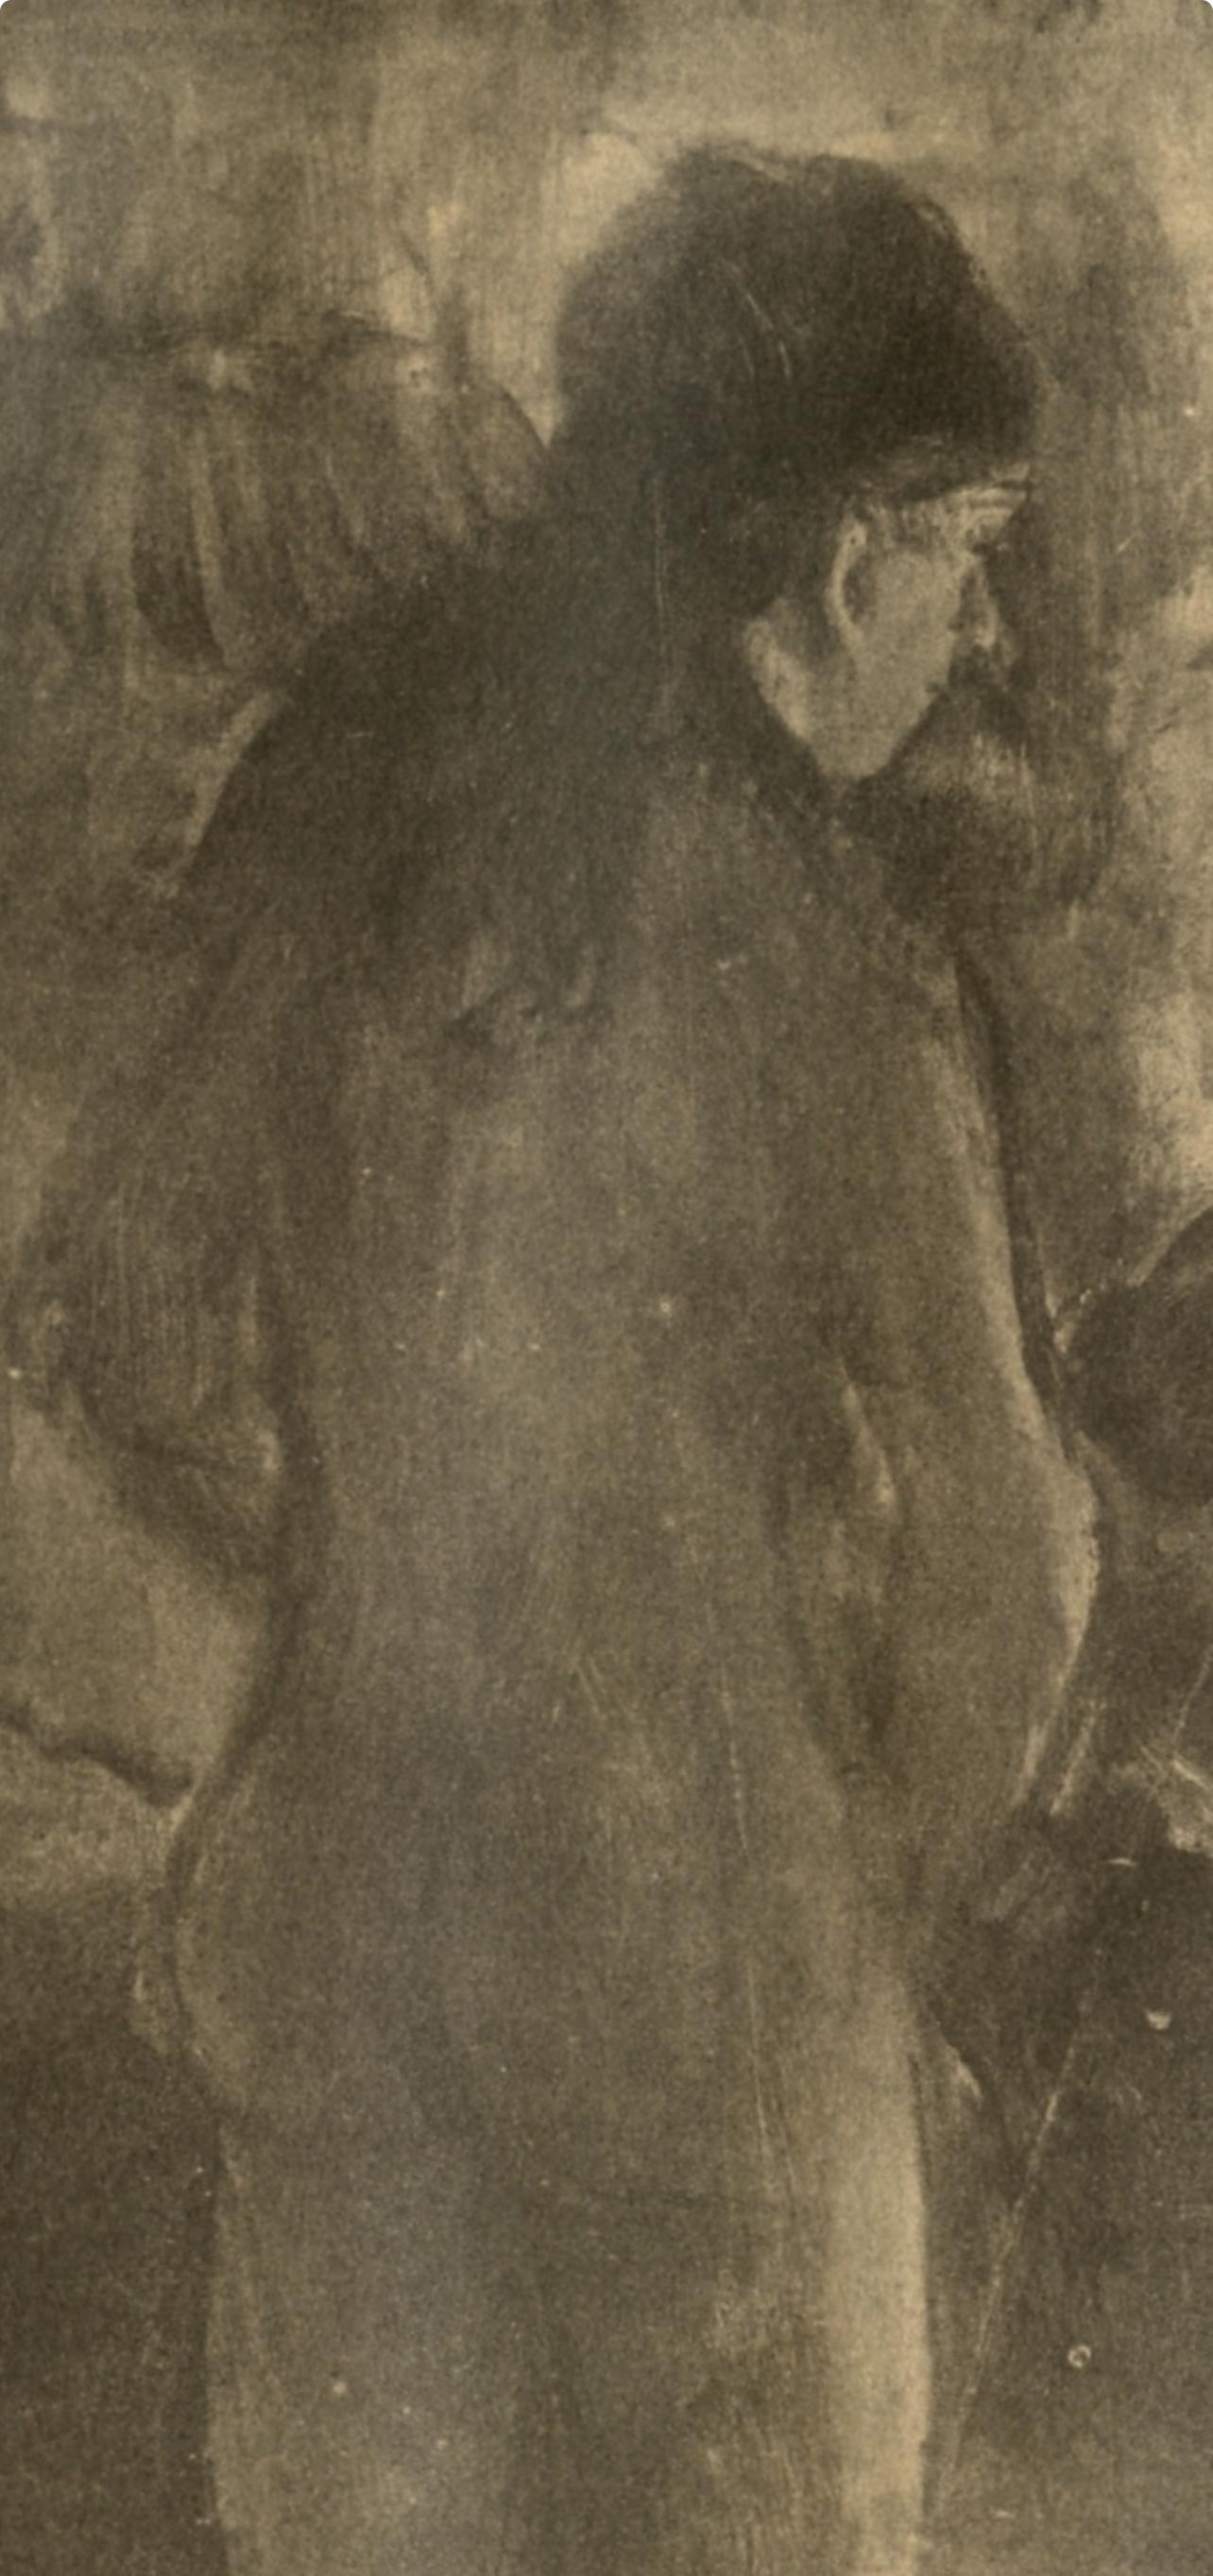 Degas, La Toilette, Les Monotypes (after) - Print by Edgar Degas